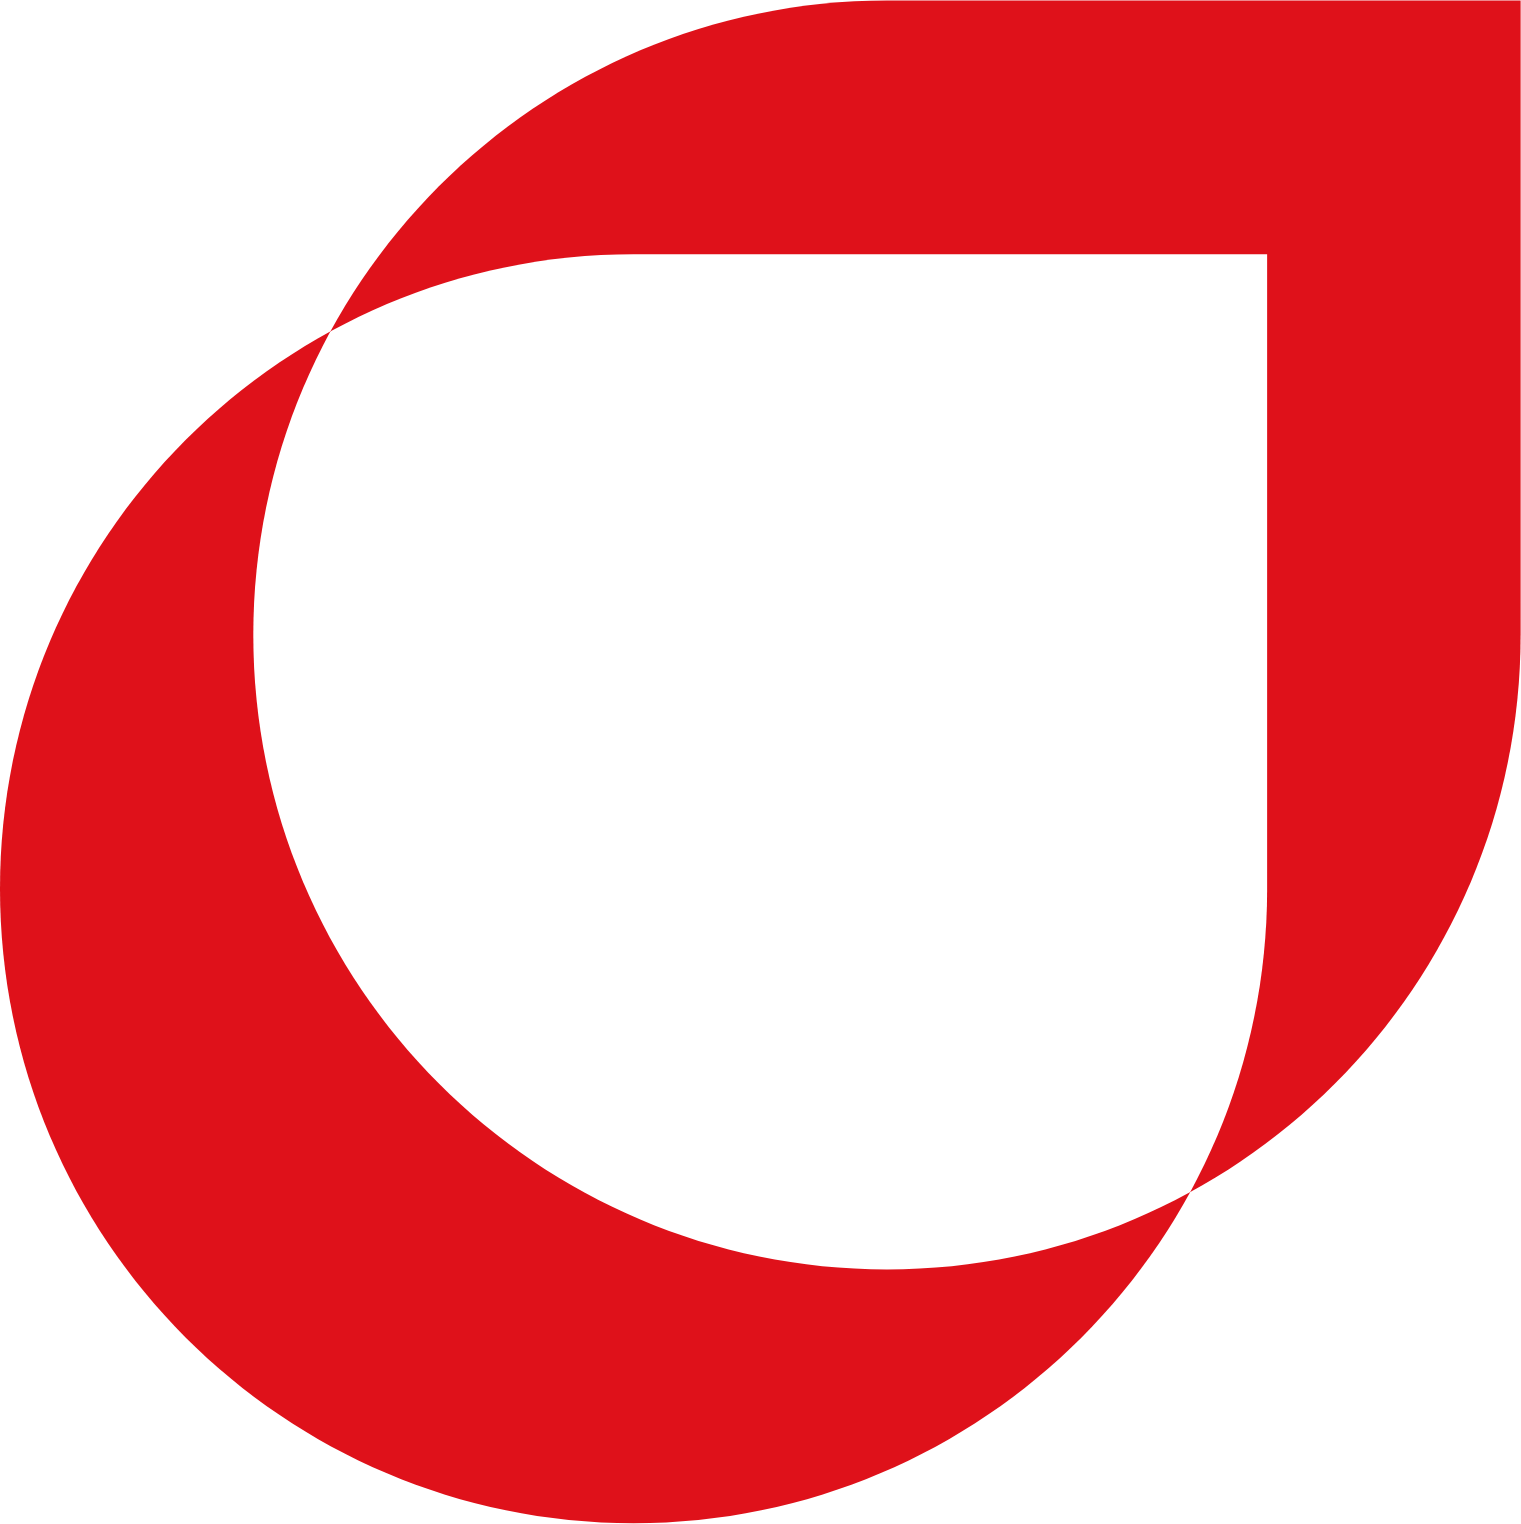 Türkiye Petrol Rafinerileri logo (PNG transparent)